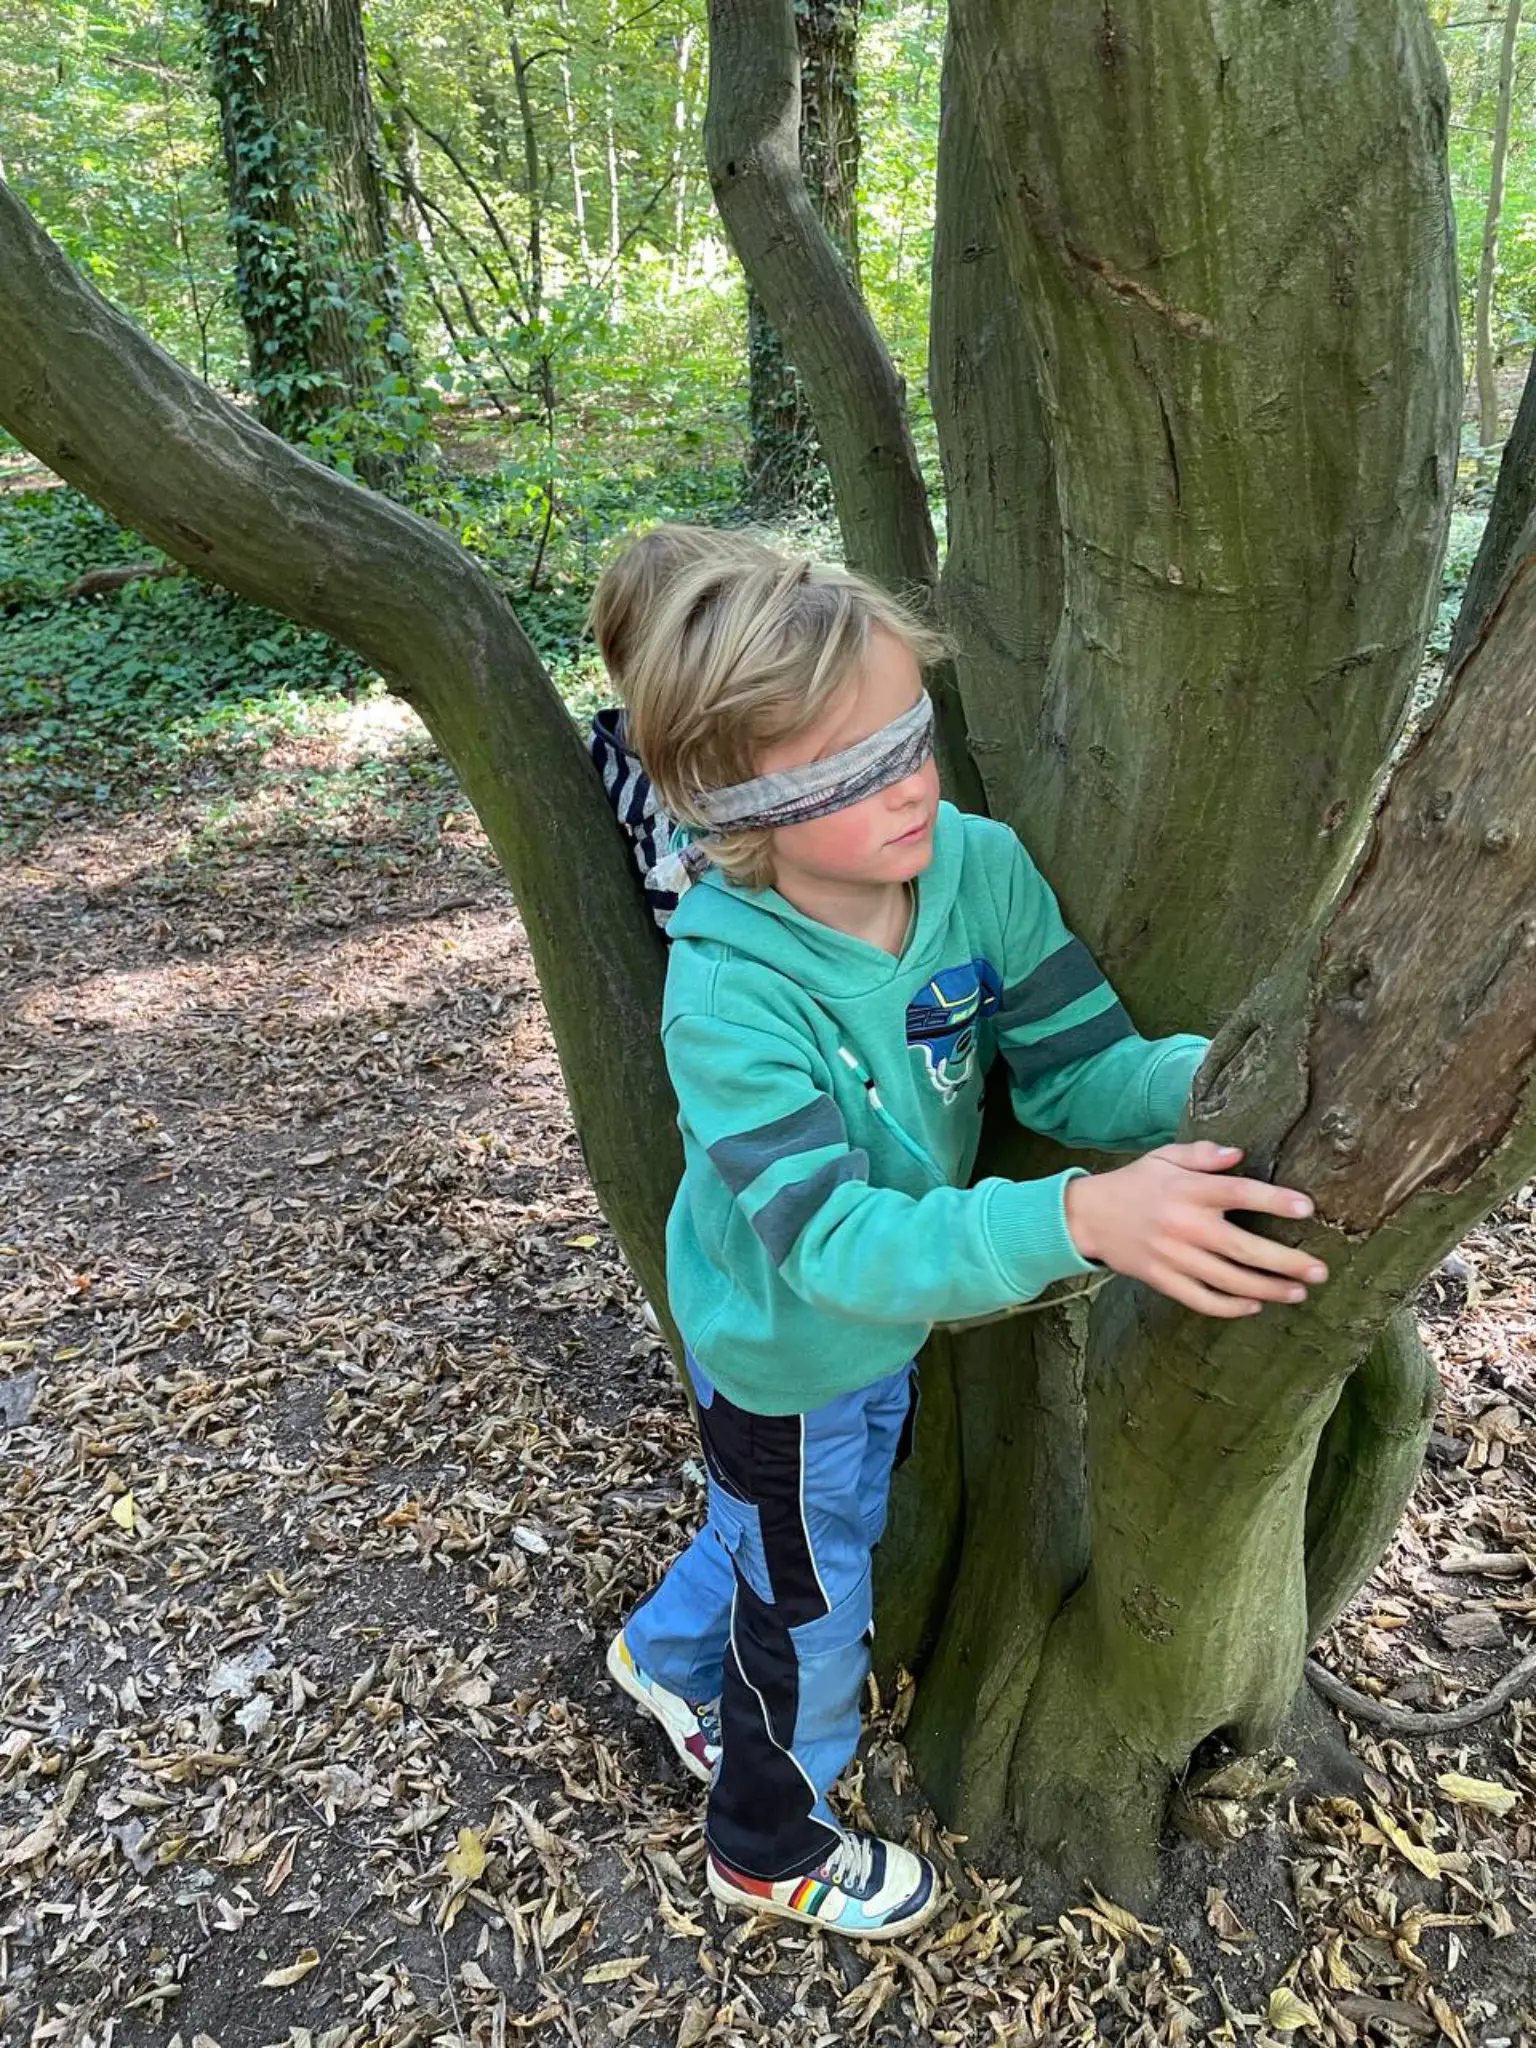 Kind ertastet Bäume mit verbundenen Augen